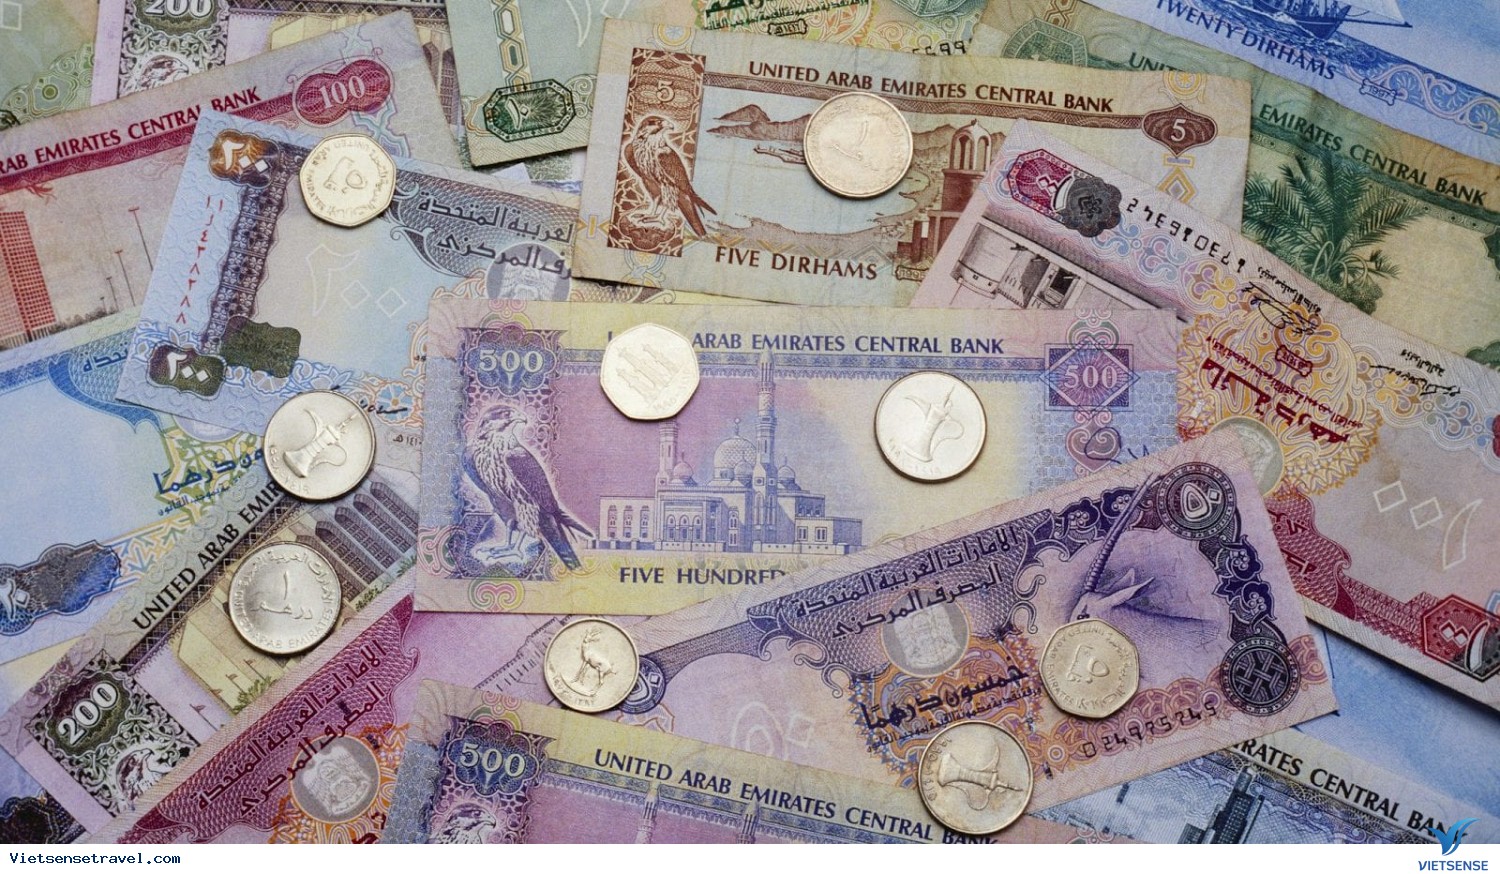 Những đồng tiền Dubai luôn tạo nên cảm giác xa hoa, sang trọng và đẳng cấp. Hãy chiêm ngưỡng những cảnh đẹp đậm chất vương giả của Tiền Dubai qua hình ảnh nóng bỏng này.